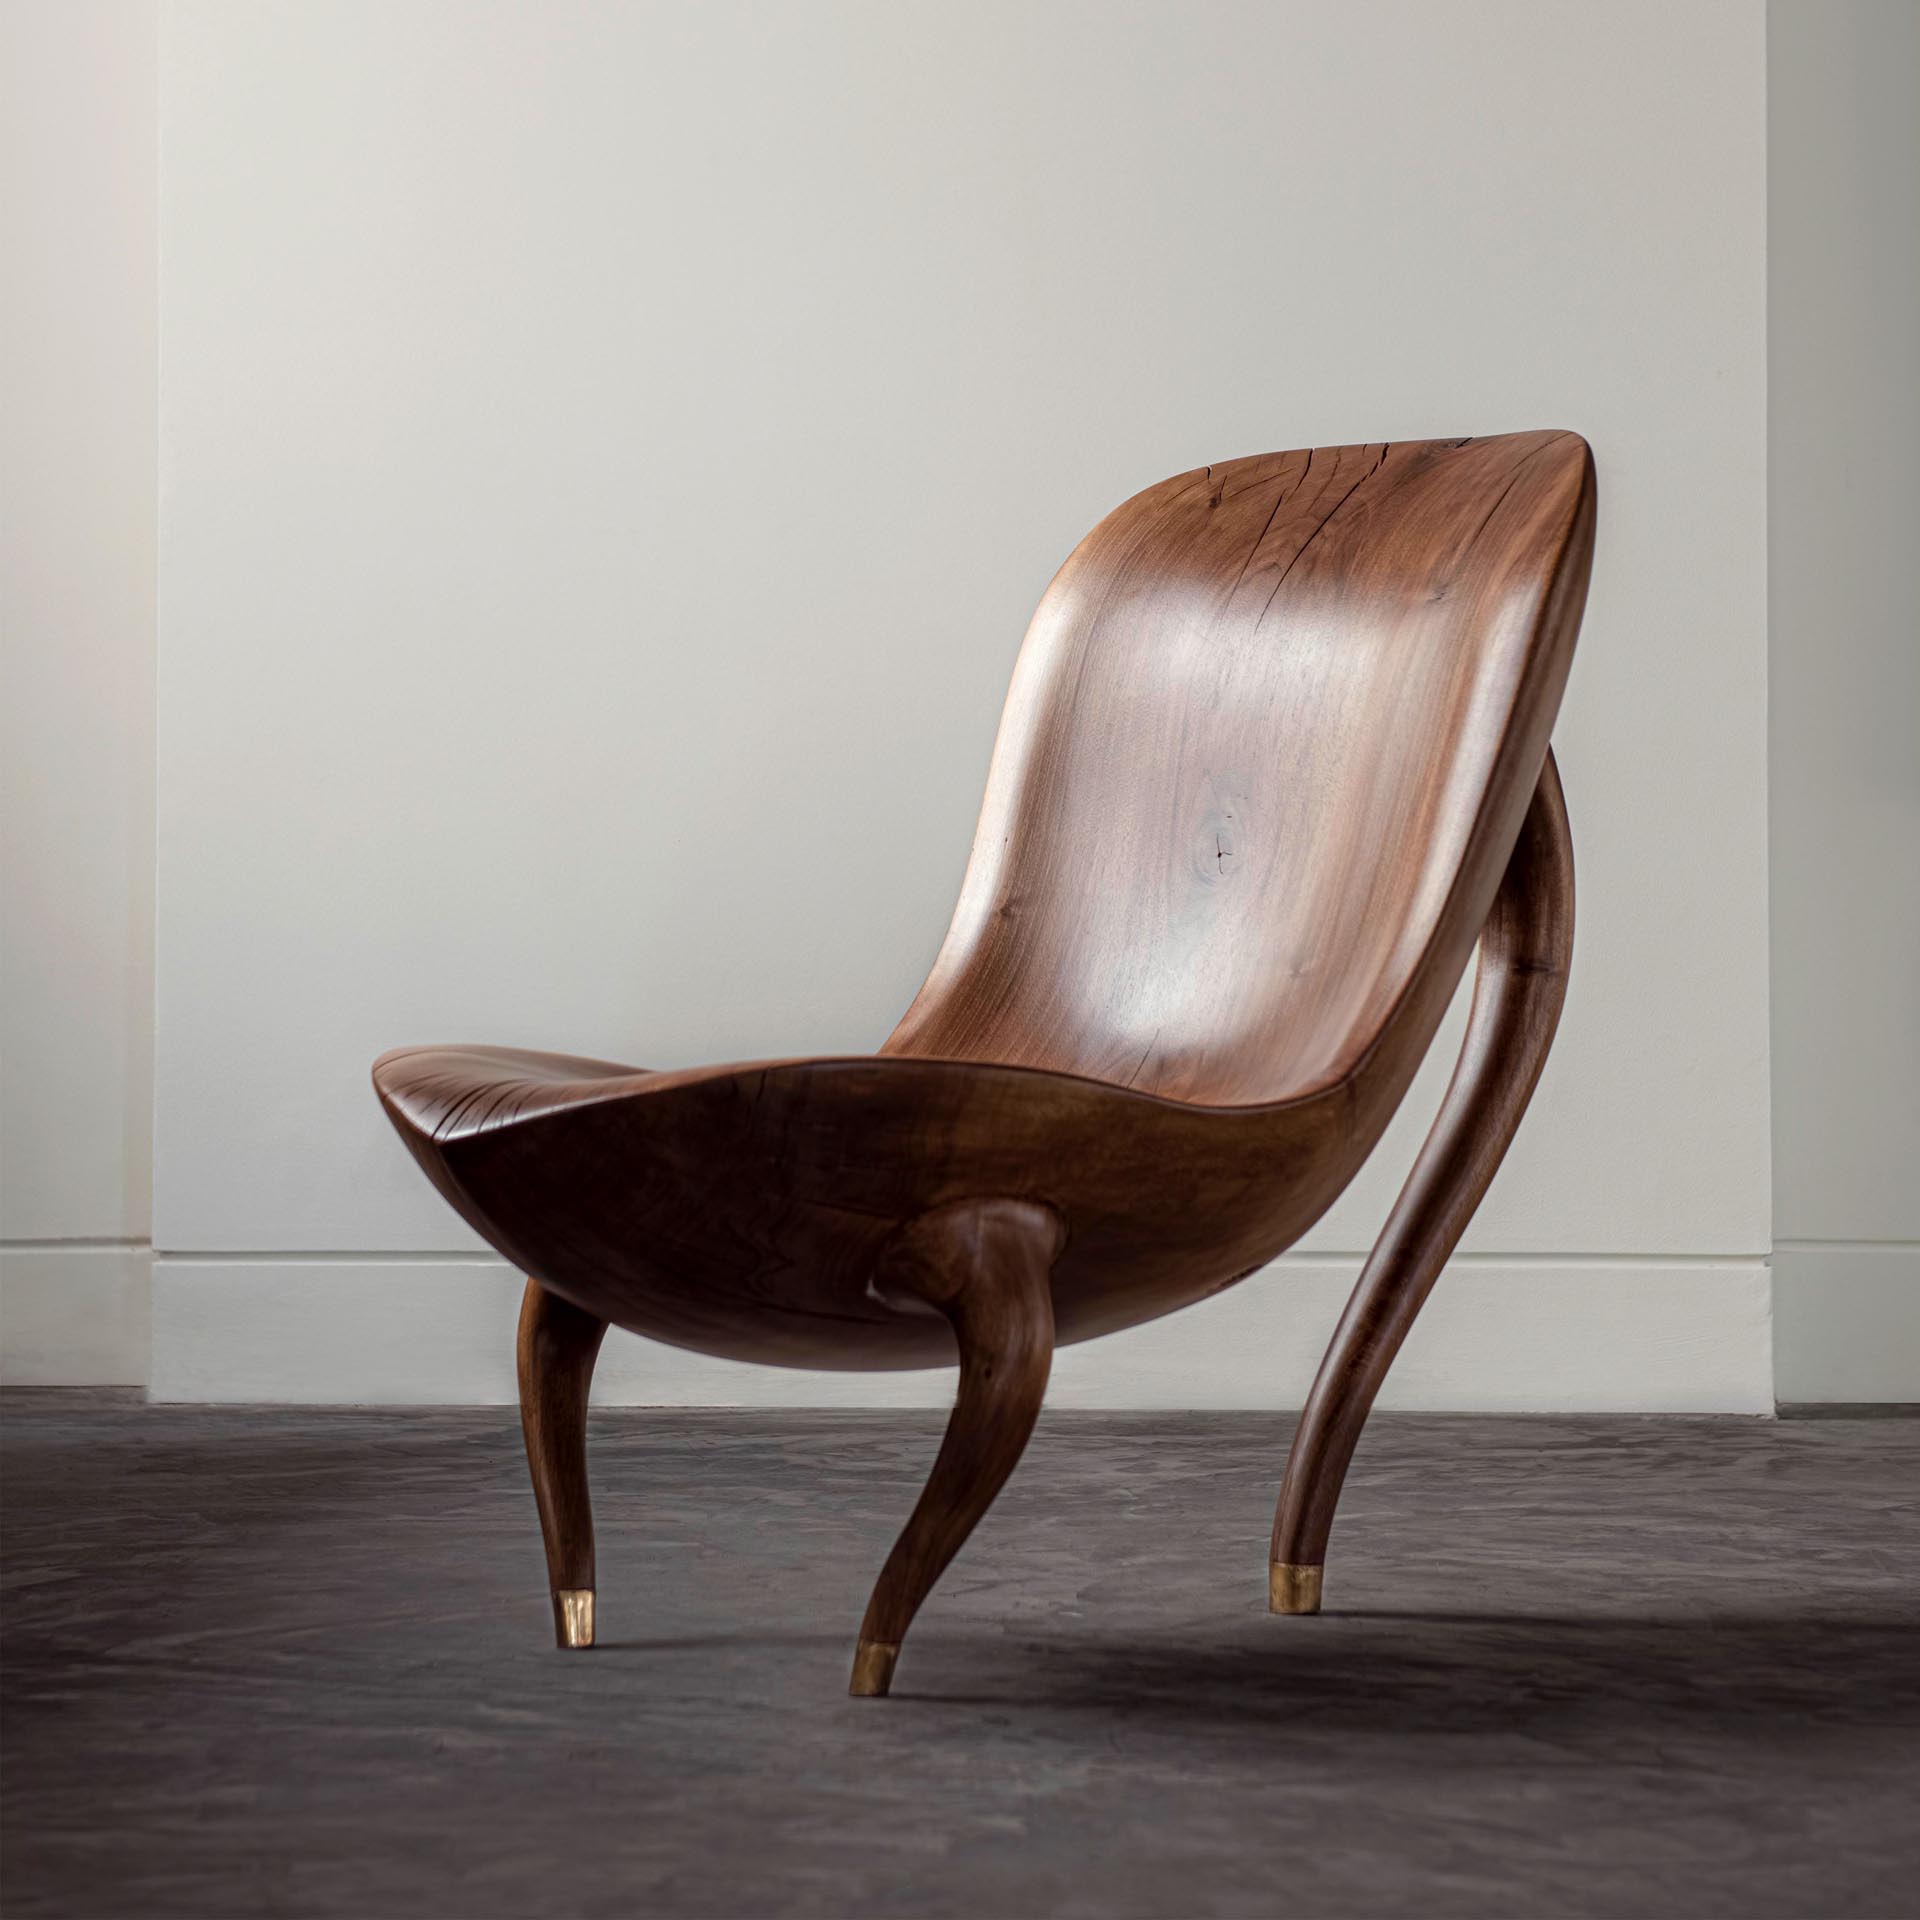 A sculptural wood chair design.